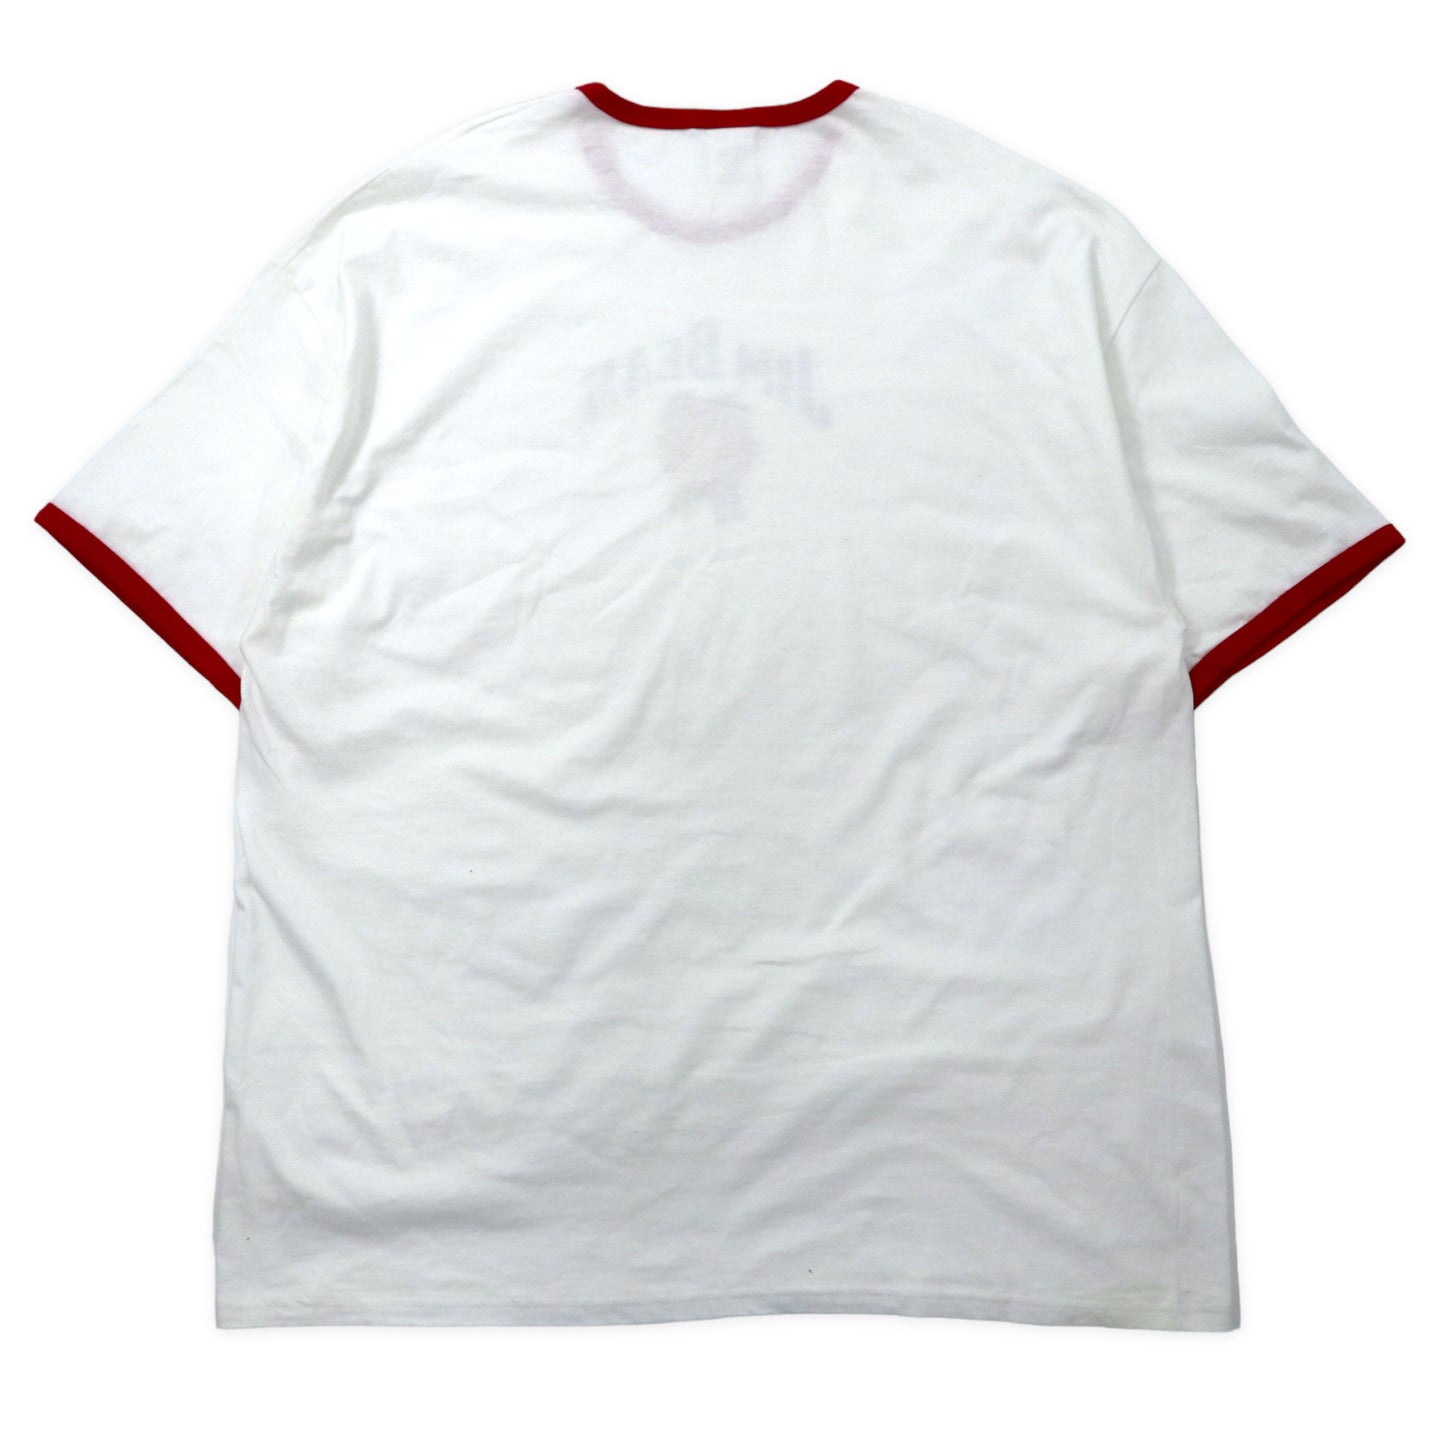 Hanes BEEFY-T リンガーTシャツ 2XL ホワイト レッド コットン JIM BEAM ビッグサイズ